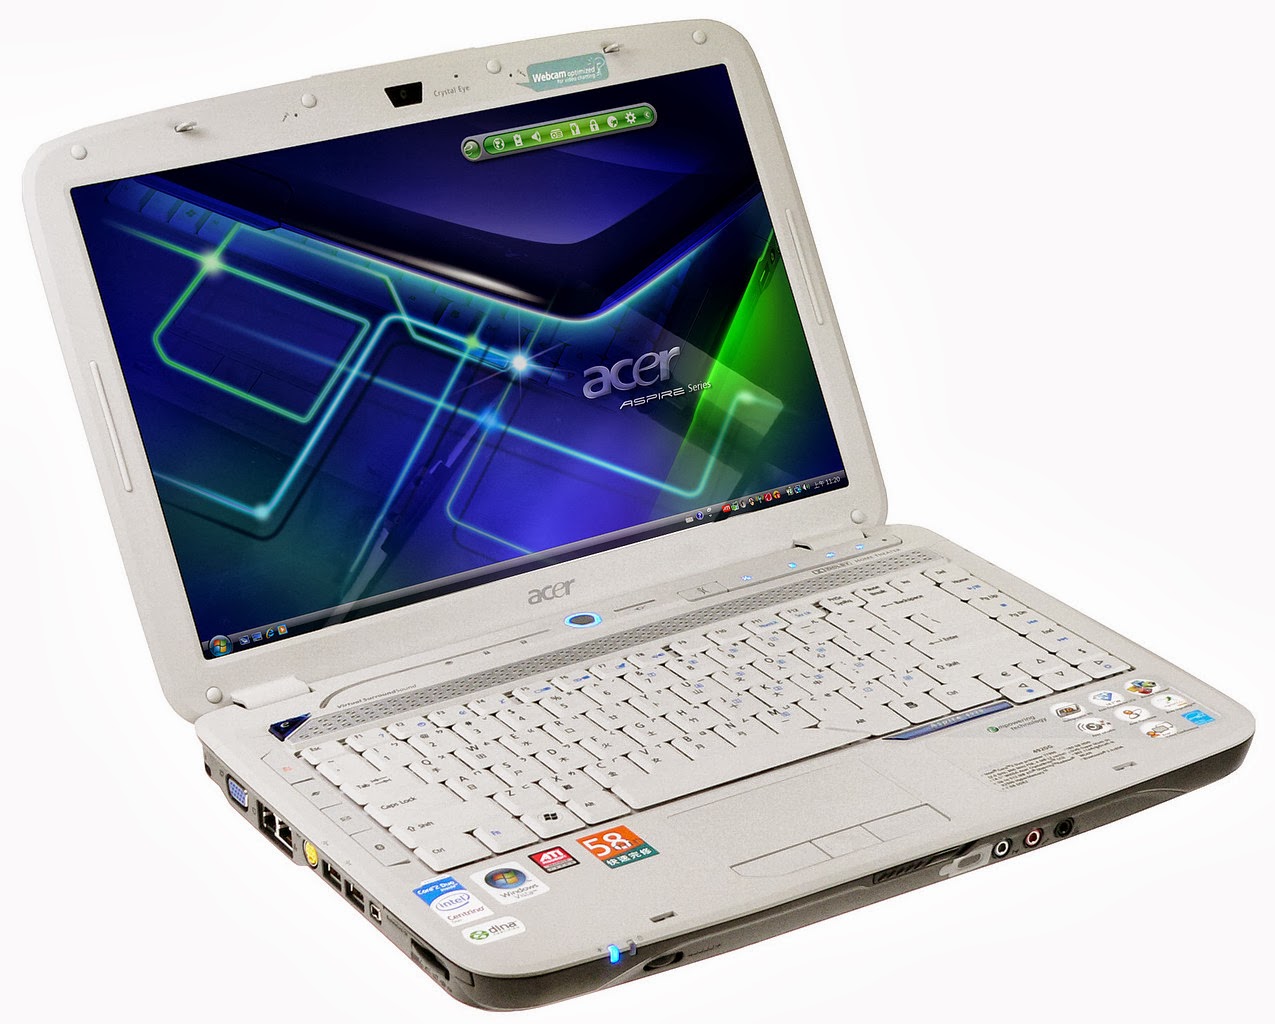  Daftar Harga Laptop Acer  Terbaru Maret 2014